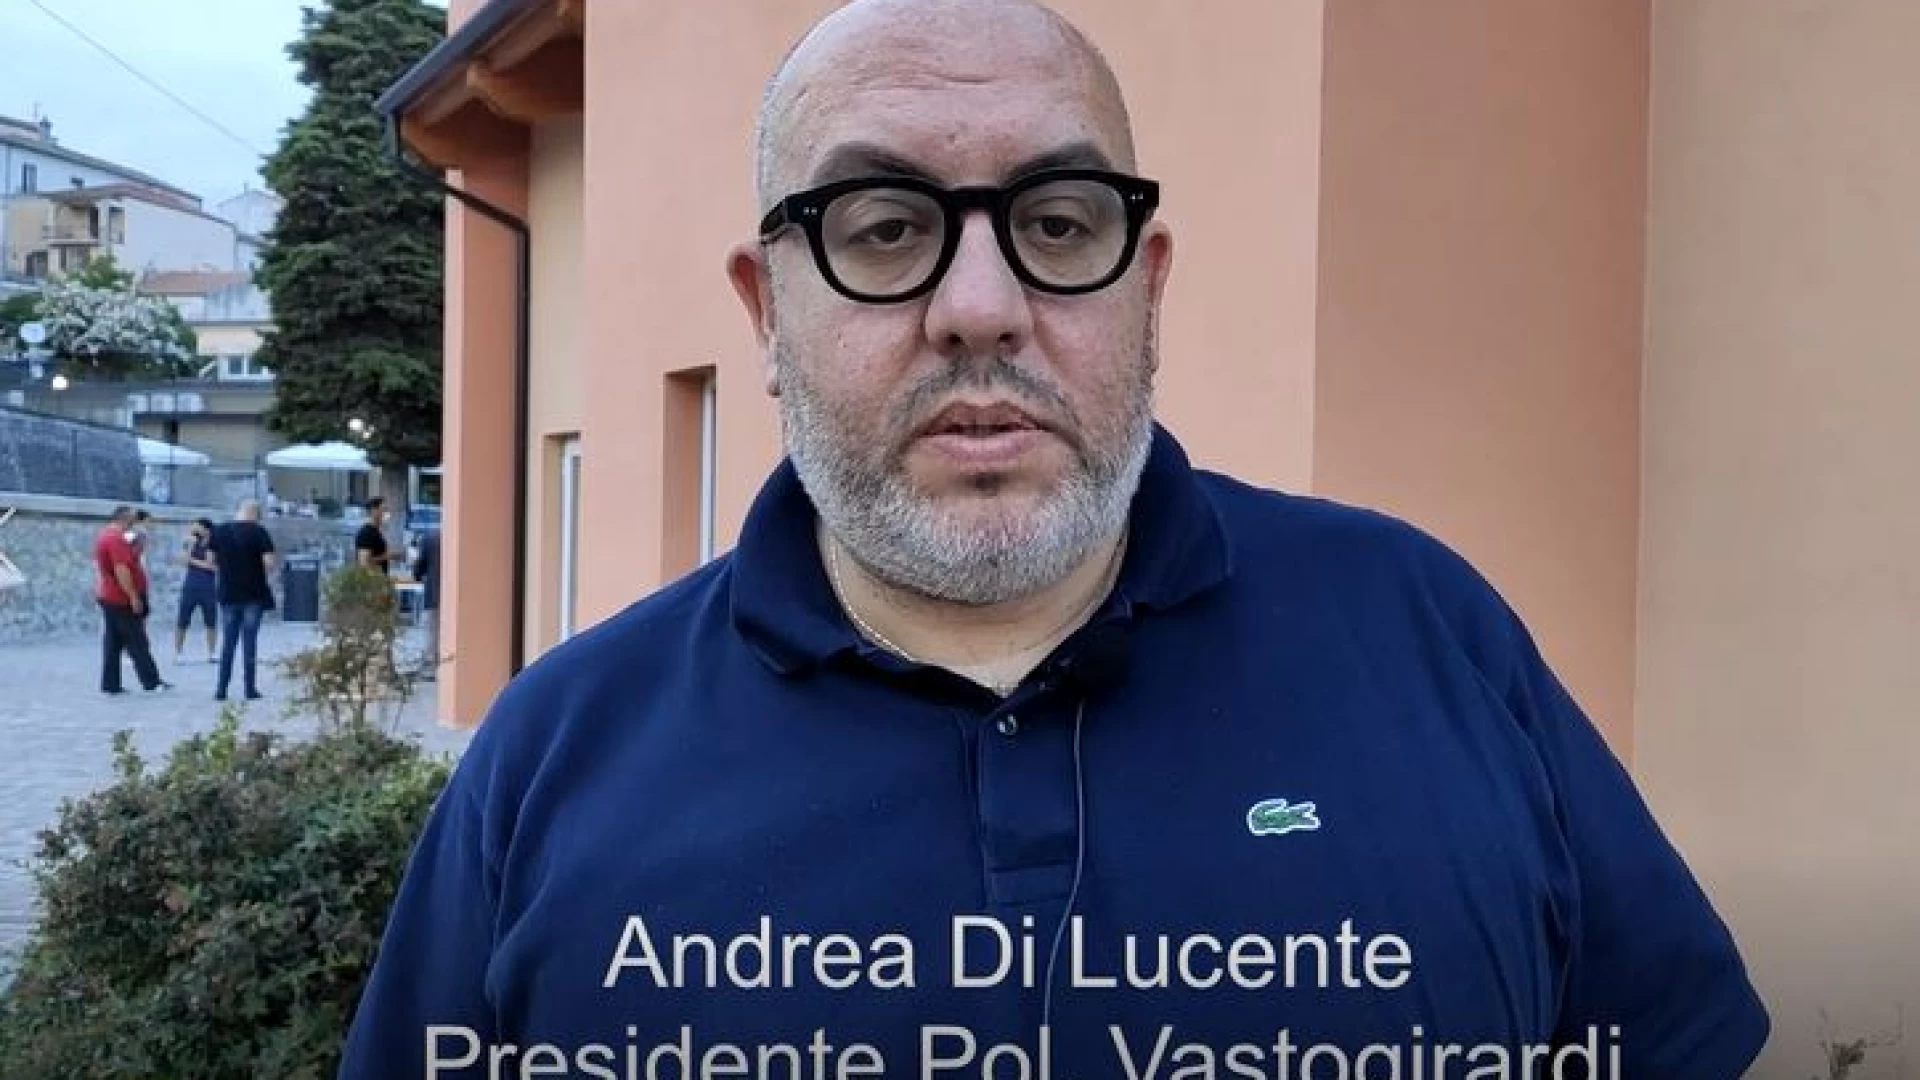 Serie D, girone F: Di Lucente saluta e ringrazia Cangi e Prosperi. "Al lavoro per la nuova stagione".